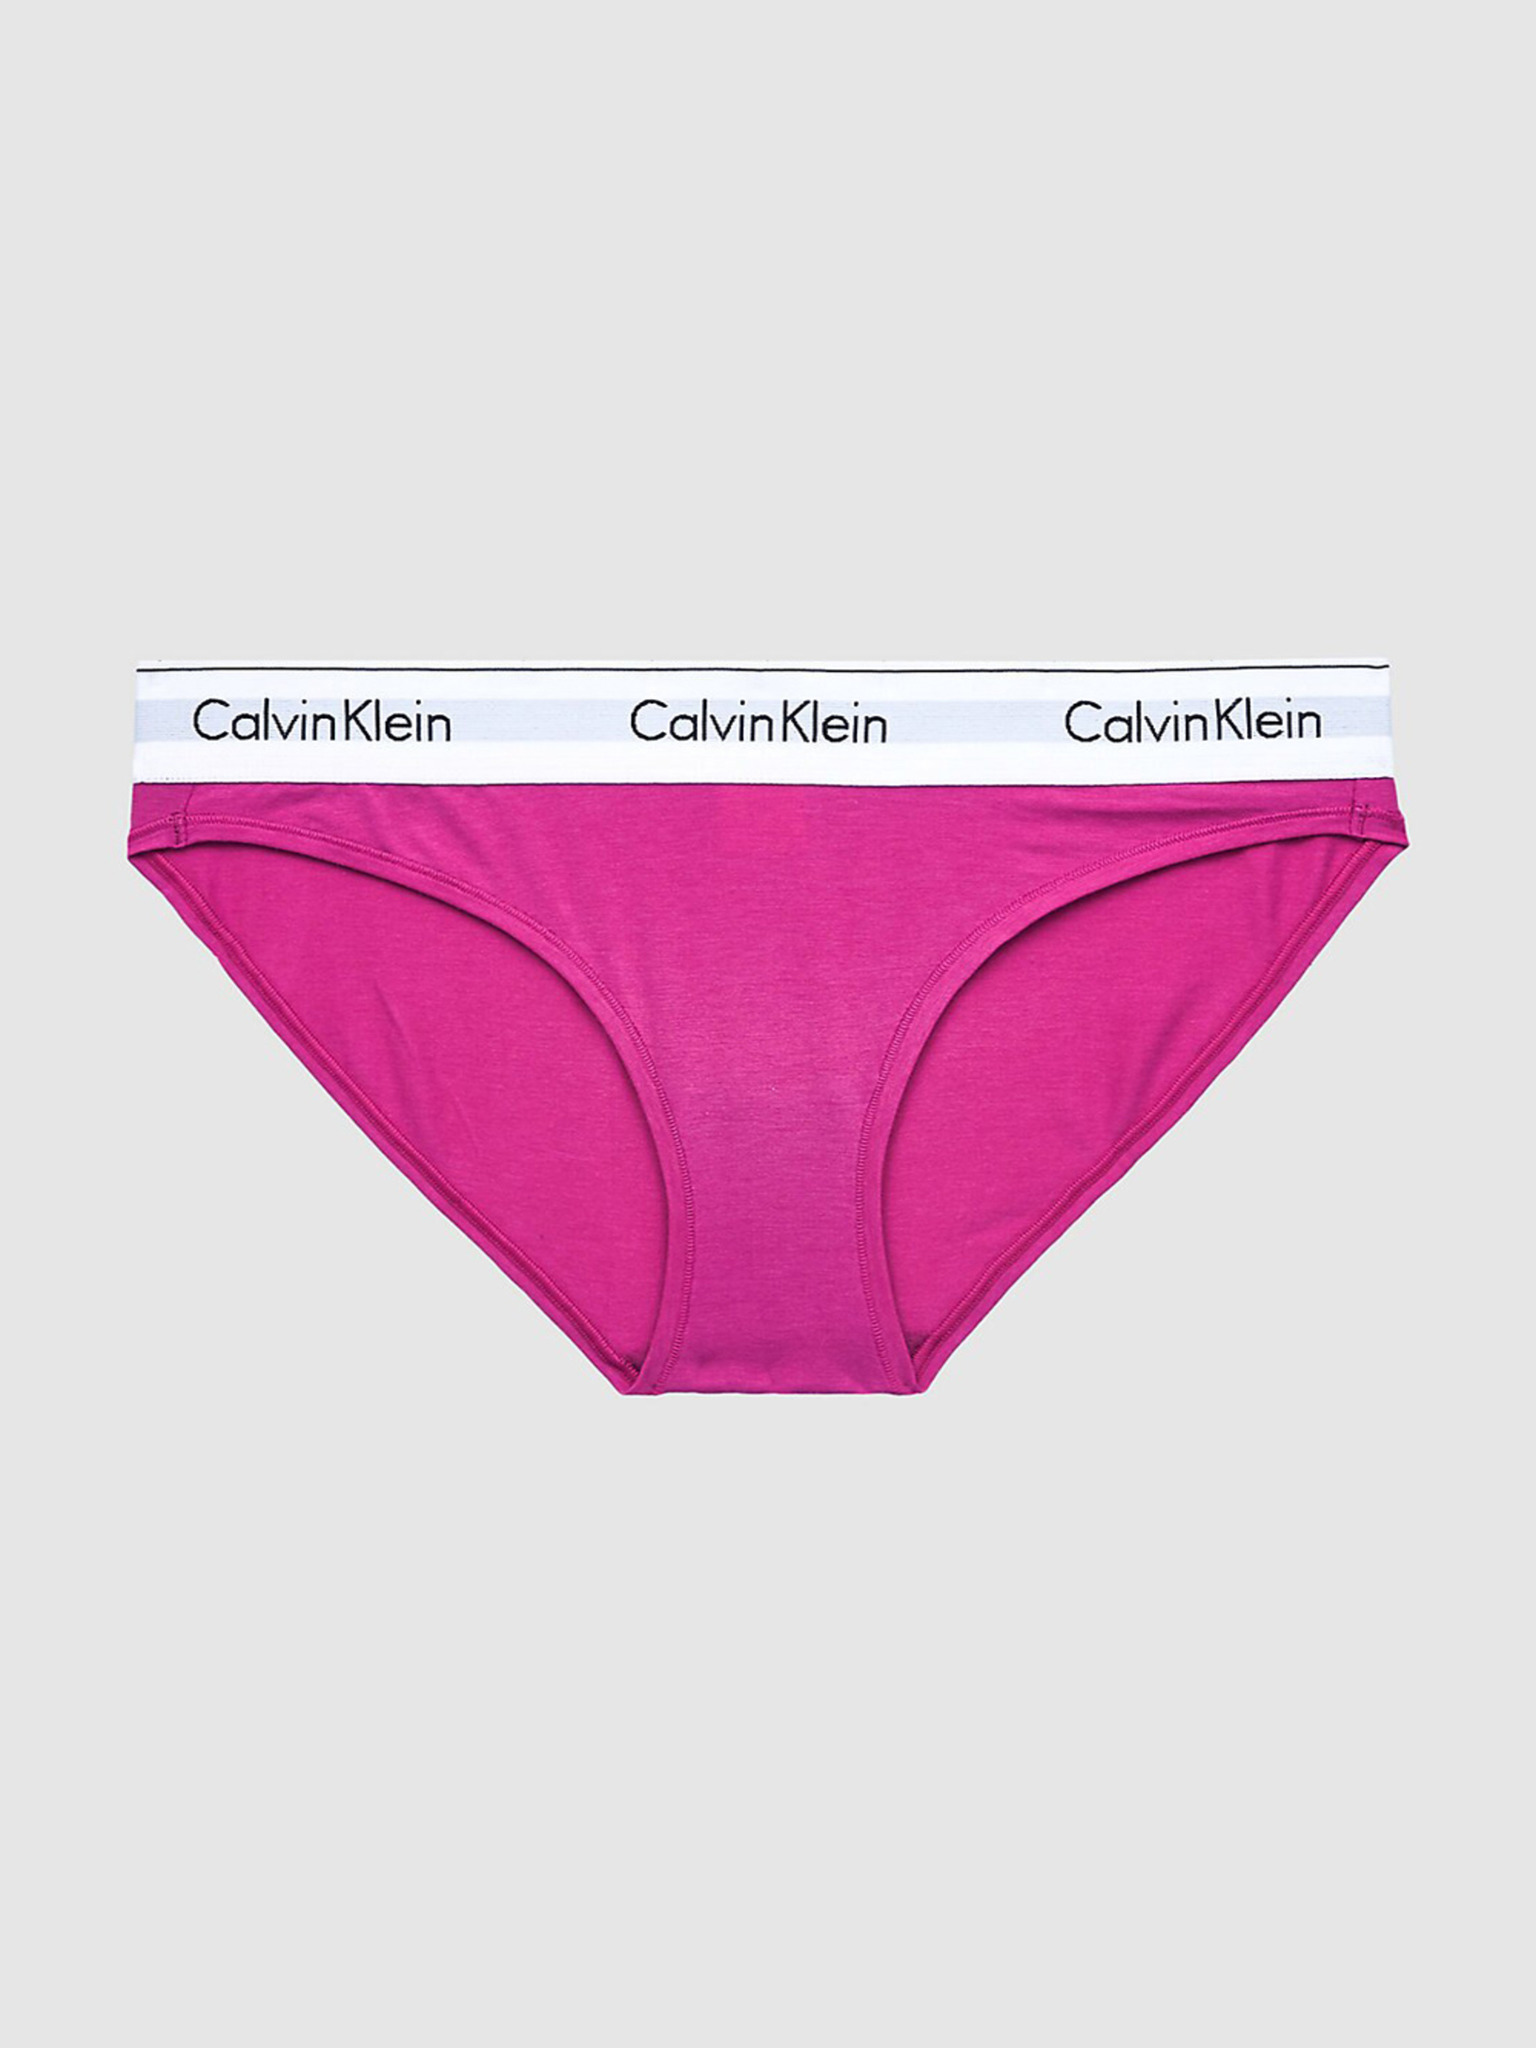 calvin klein hot pink underwear - OFF-51% >Free Delivery